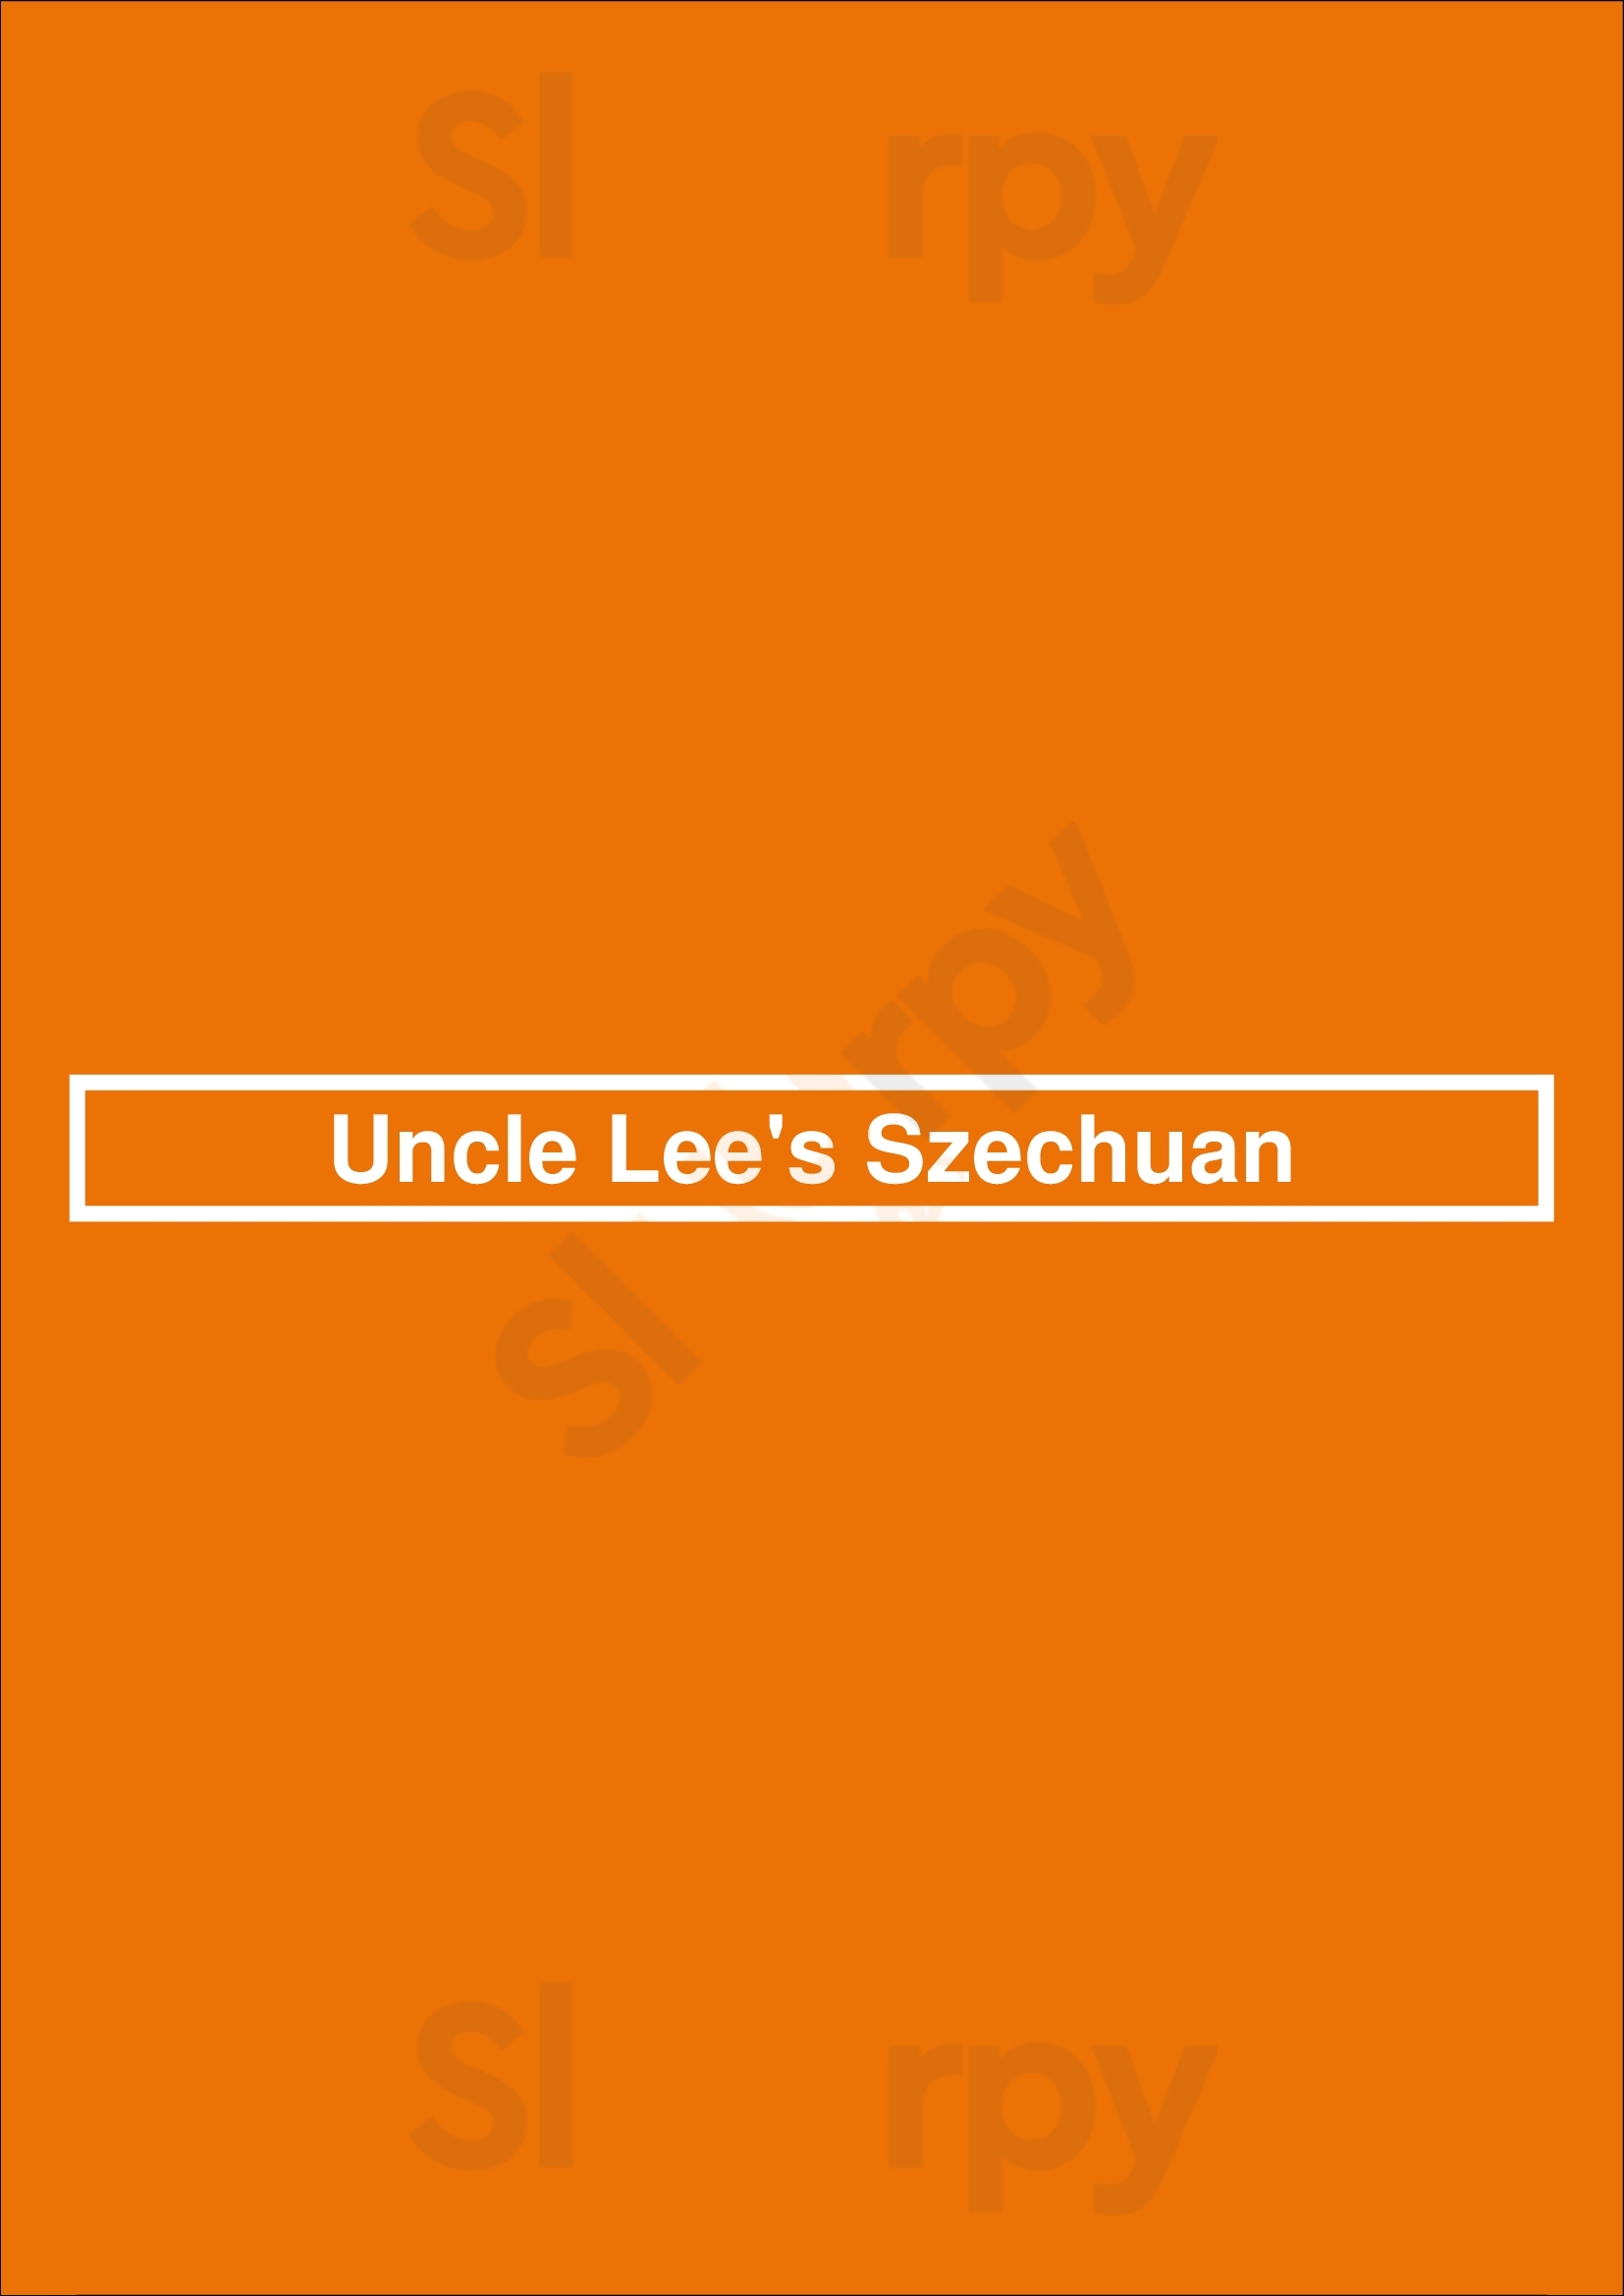 Uncle Lee's Szechuan Baltimore Menu - 1